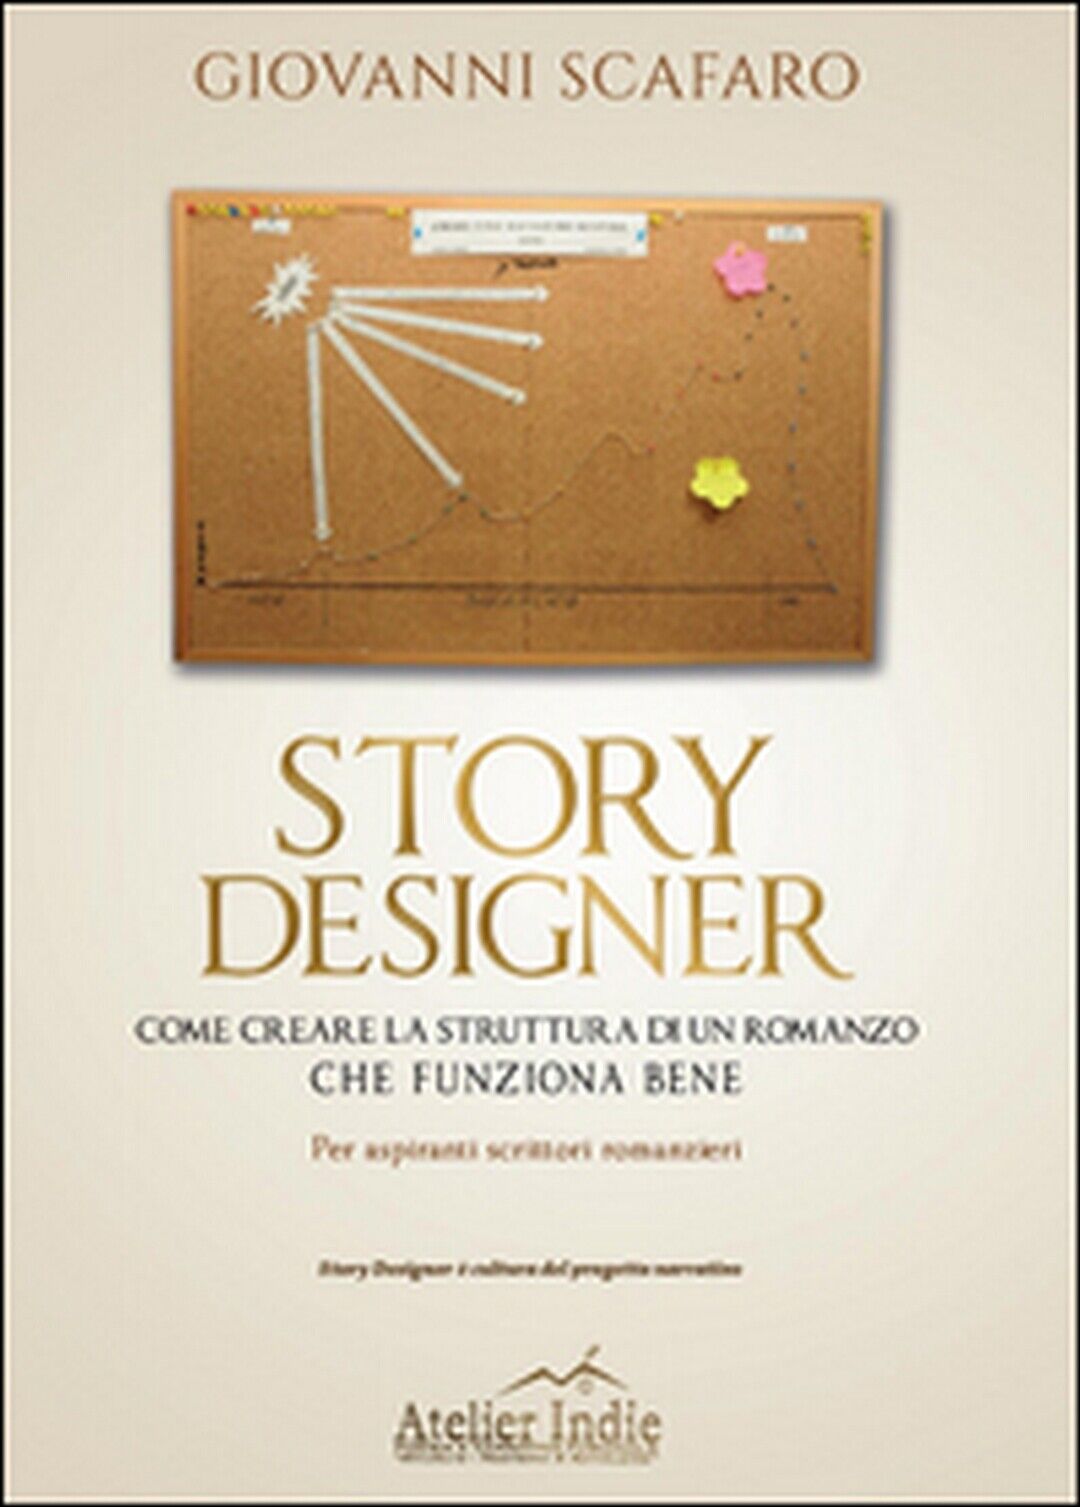 Story designer. Come creare la struttura di un romanzo che funziona bene  libro usato